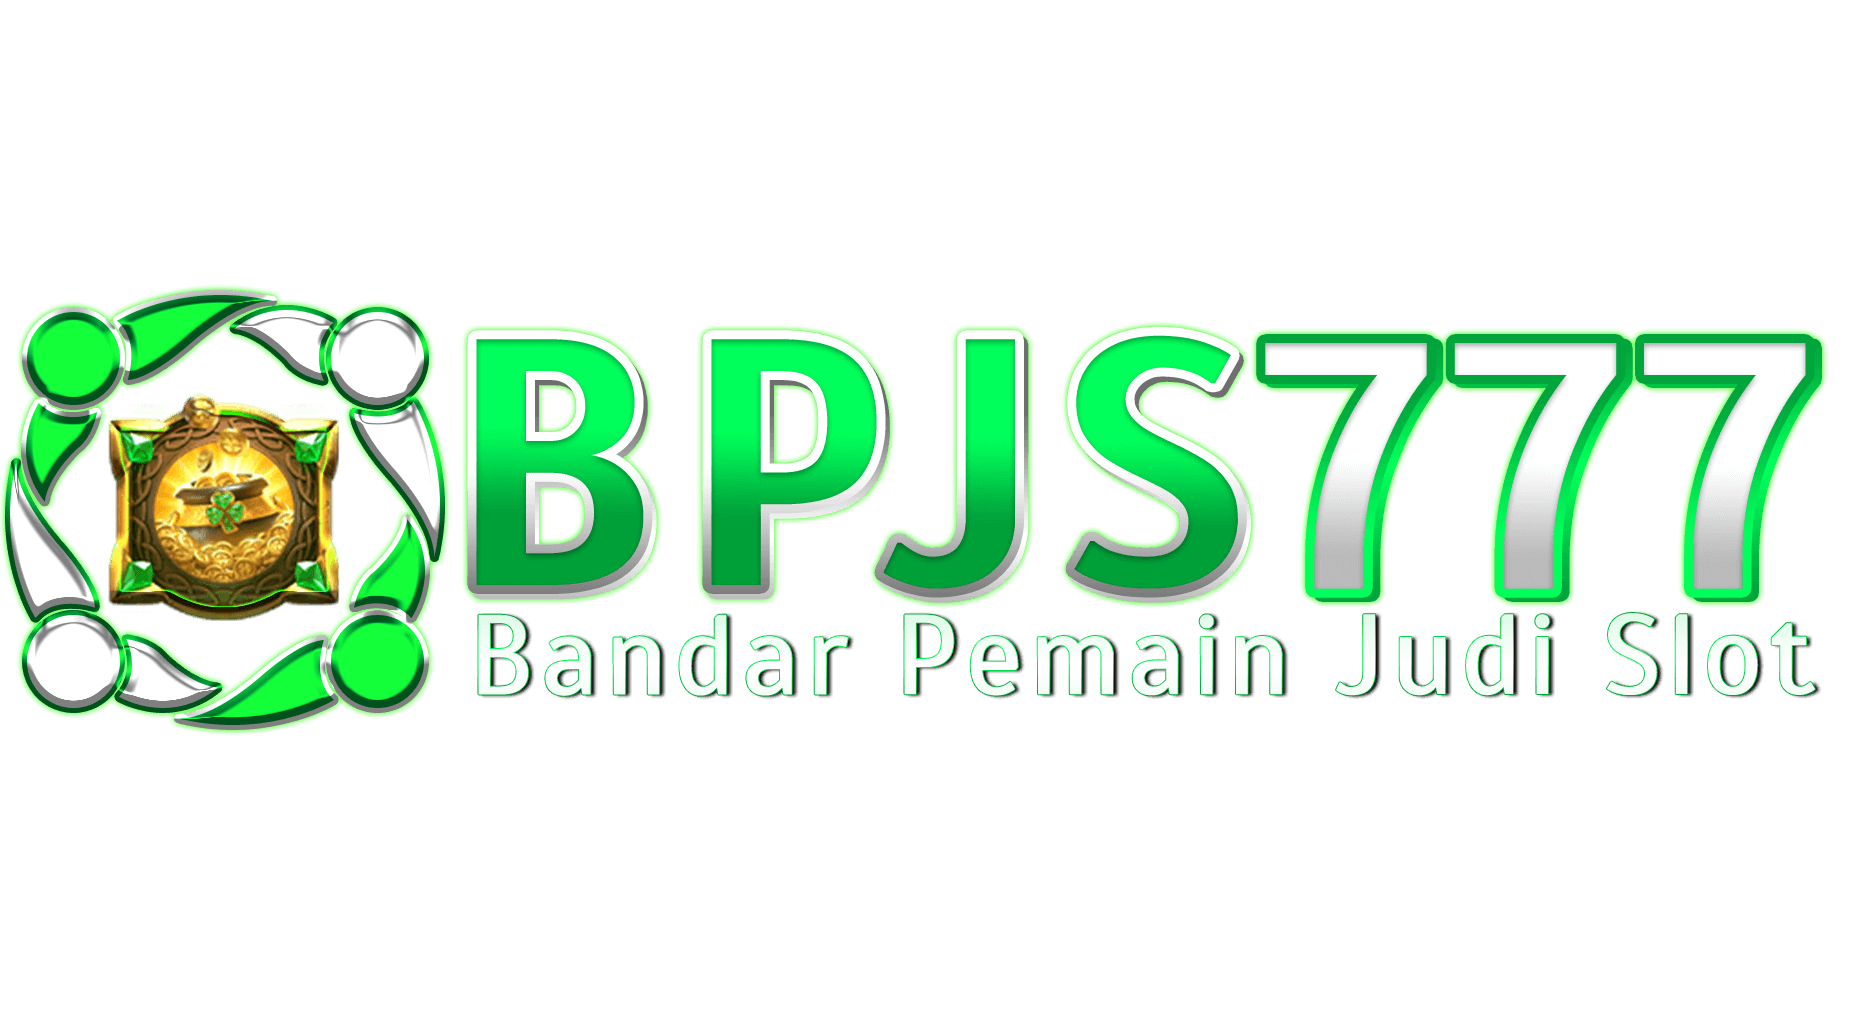 BPJS777